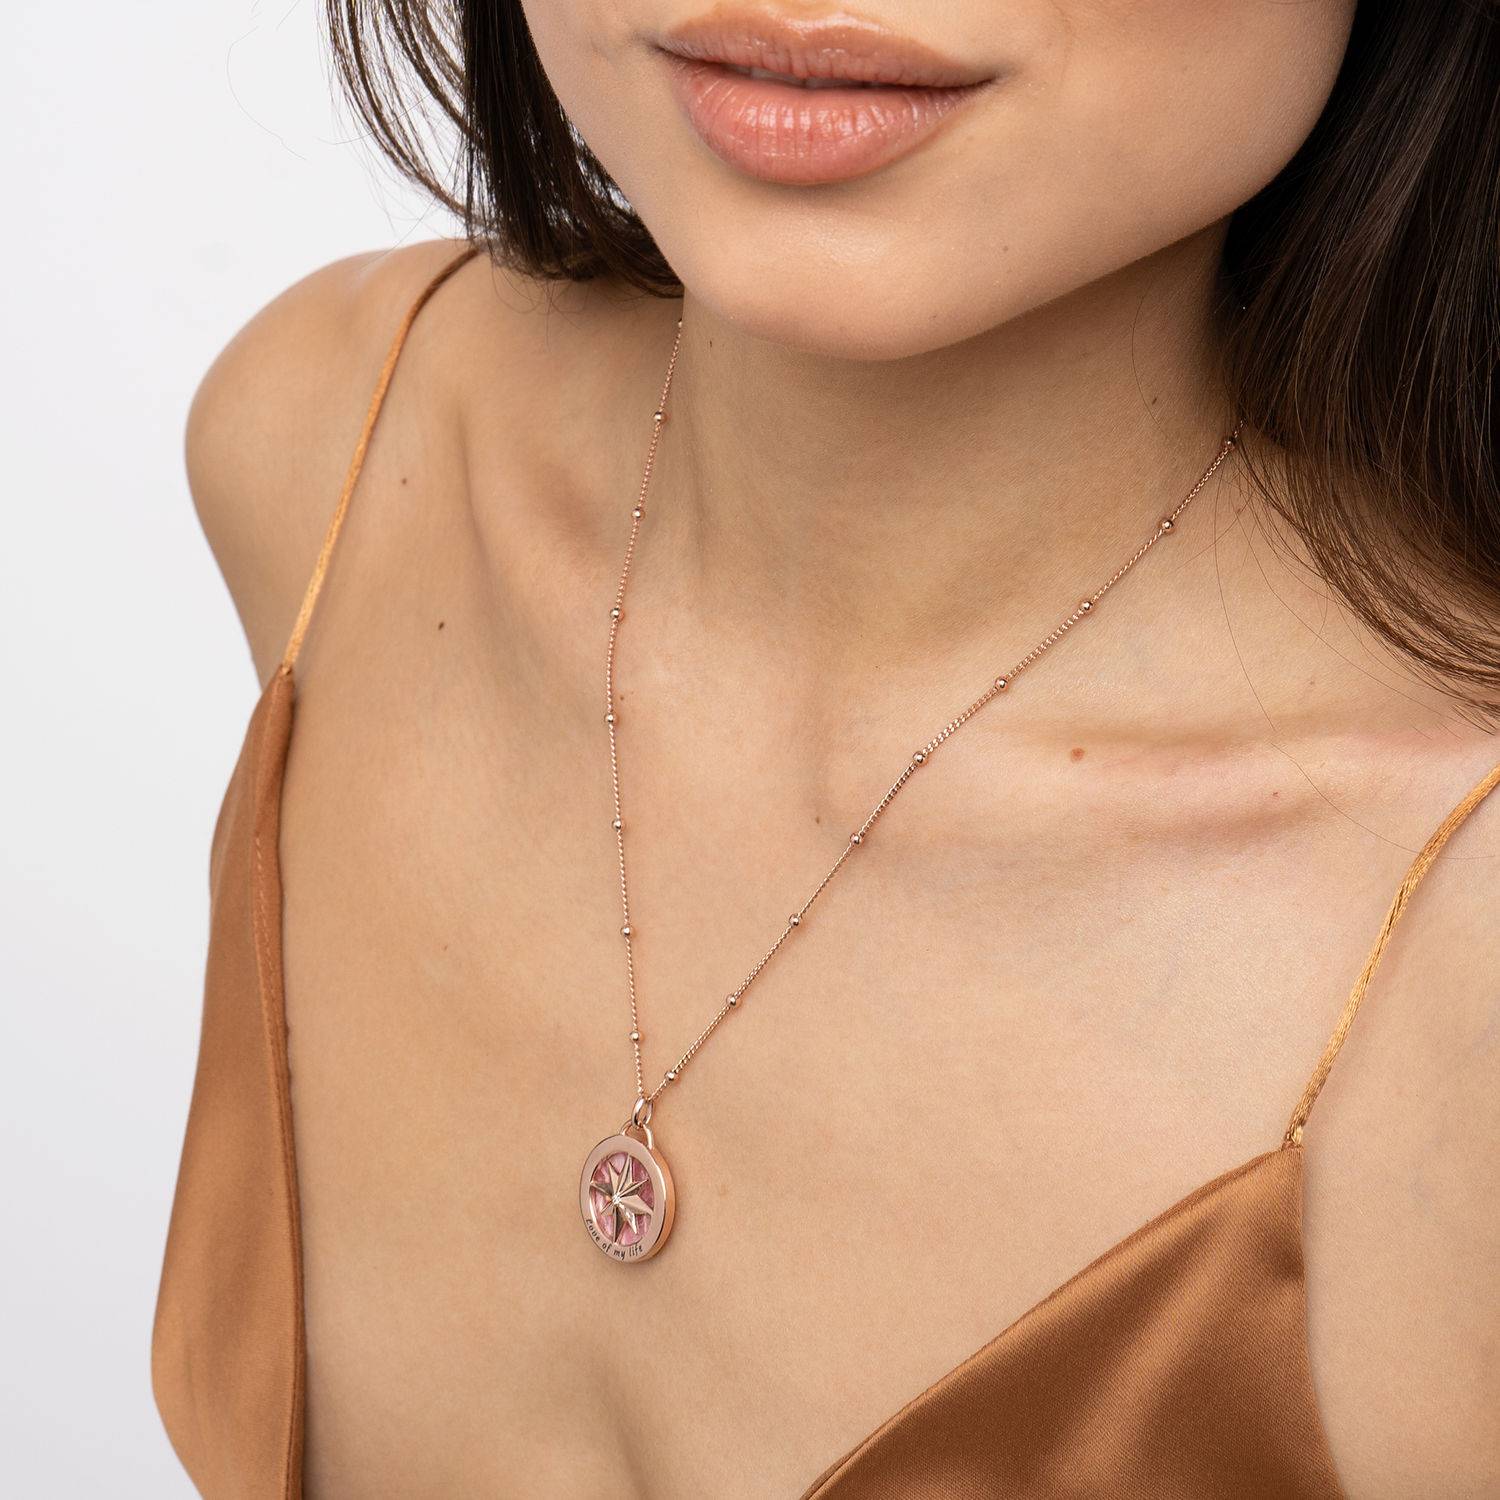 Collar de brújula grabada con Piedra Semipreciosa en Chapa de oro Rosa de 18K-1 foto de producto